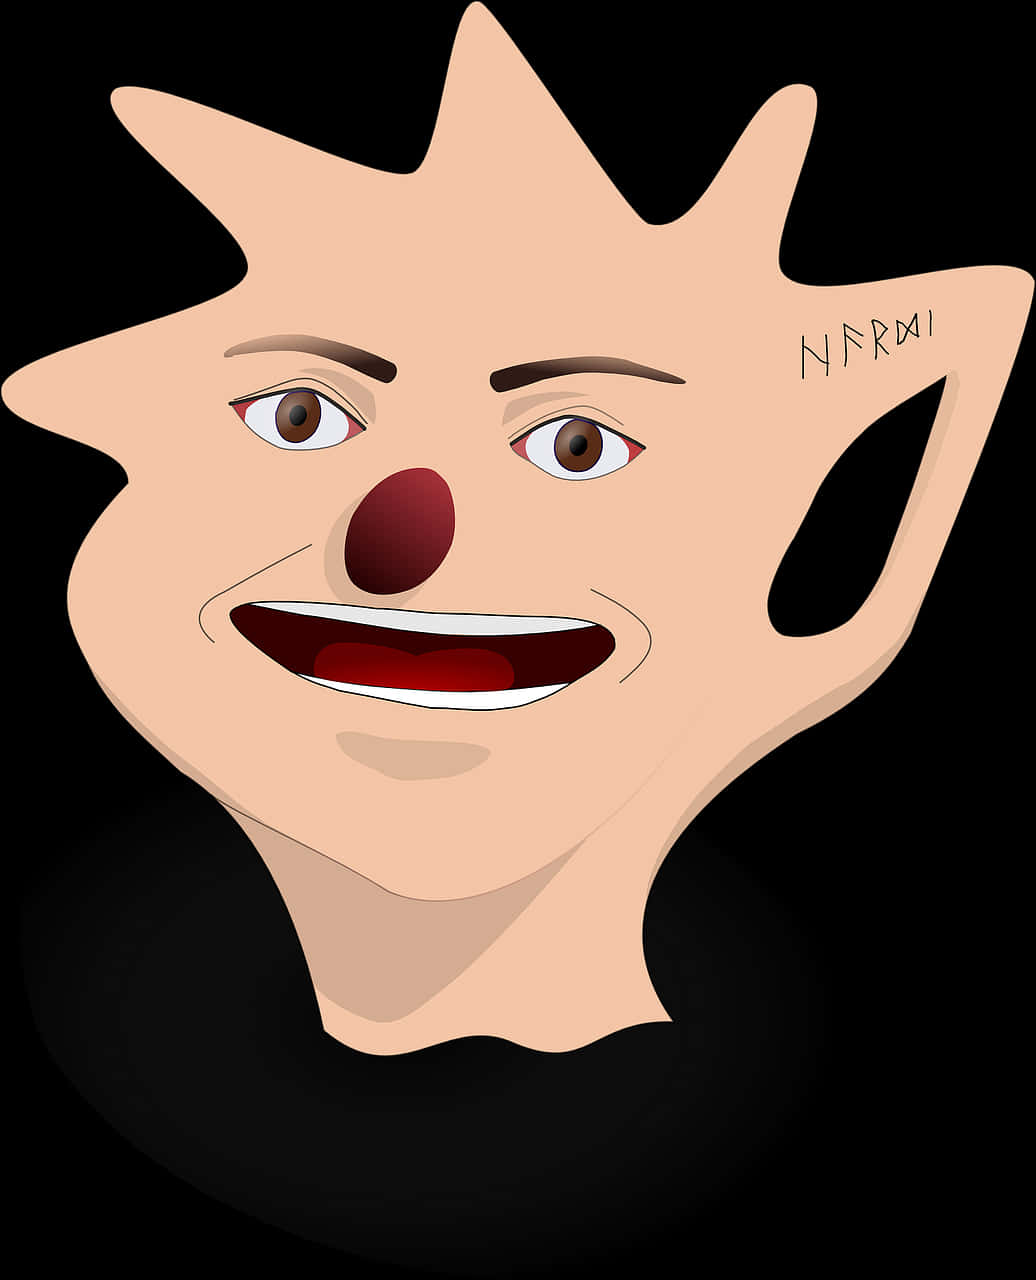 Abstract Clown Face Art.jpg PNG